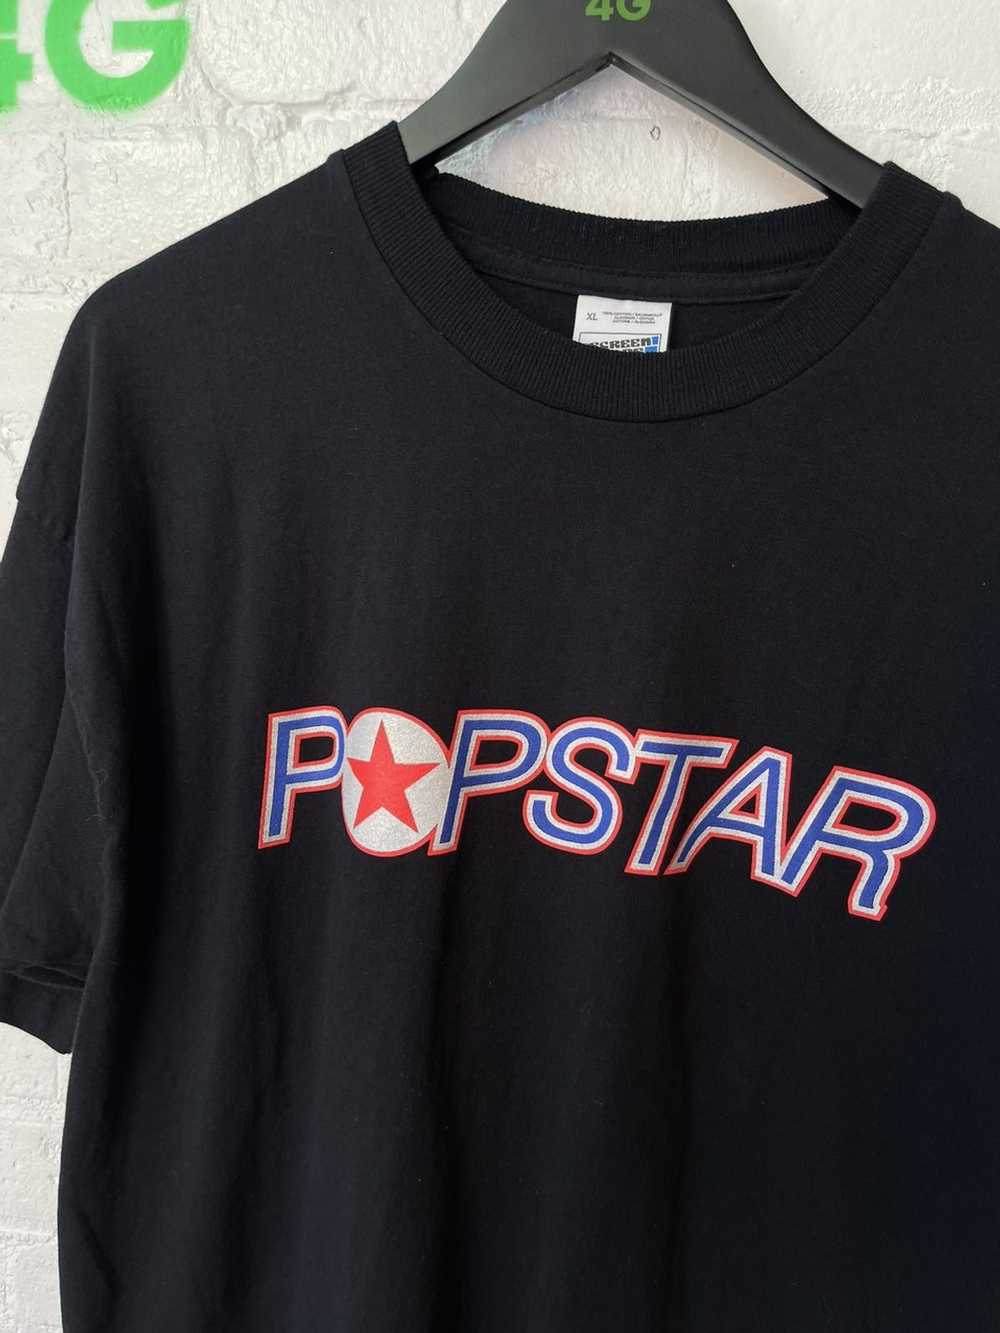 Vintage Vintage POPSTAR Shirt XL POP STAR single … - image 2